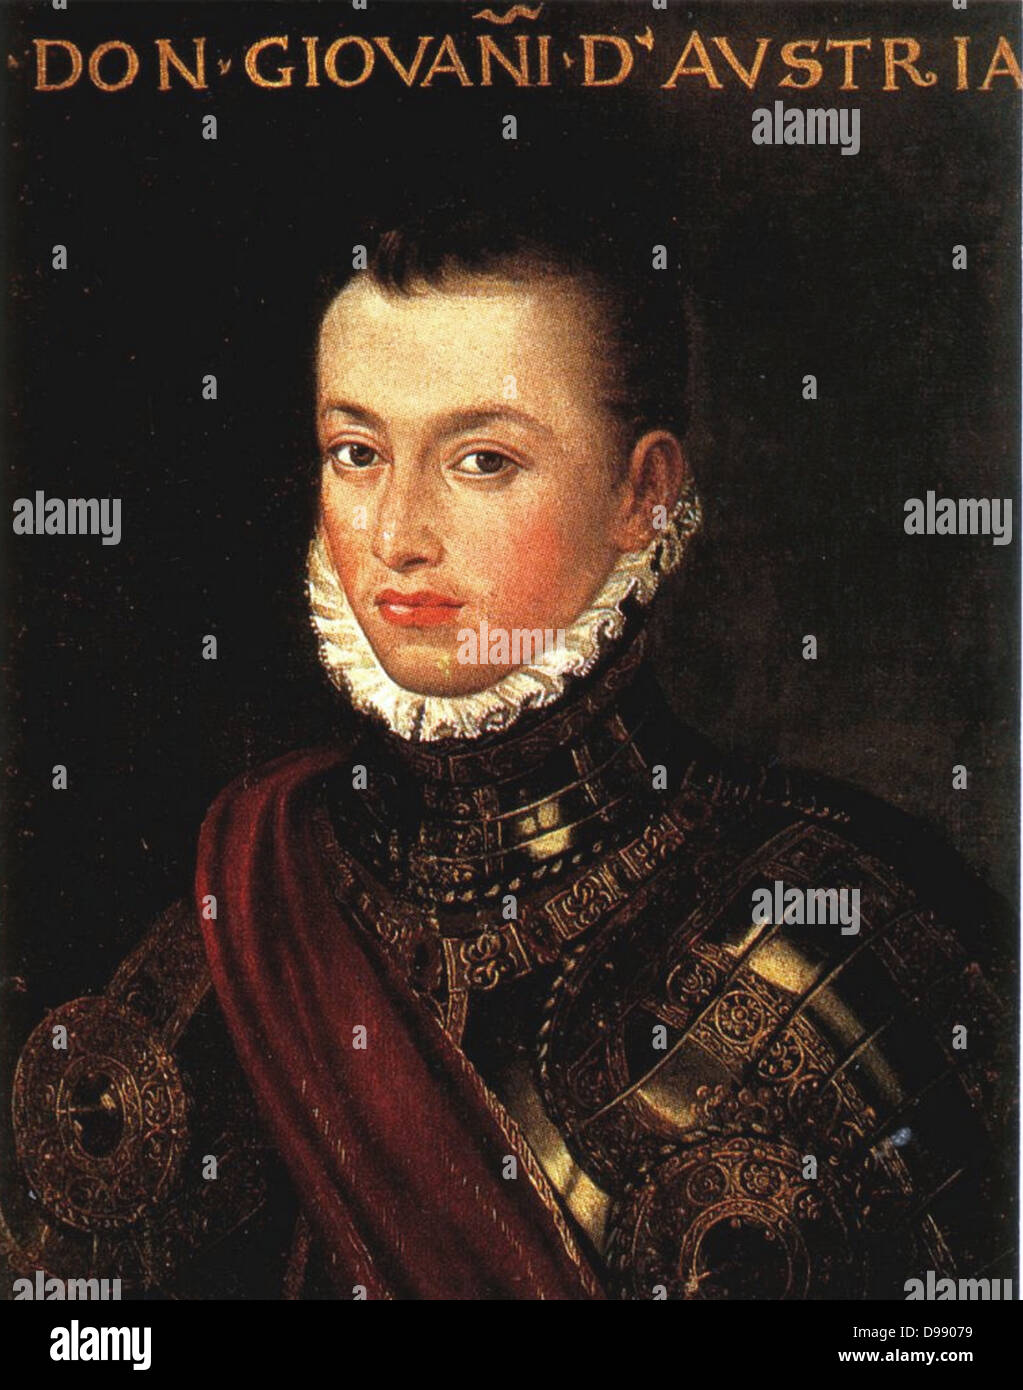 Don Juan von Österreich (1547-1578) als Don John Österreichs bekannt, und in Spanisch als Don Juan de Austria war ein unehelicher Sohn des Heiligen Römischen Kaiser Karl V. Er ein militärischer Führer in den Dienst von seinem Halbbruder wurde, Philipp von Spanien und ist am besten für seine Naval Sieg in der Schlacht von Lepanto im Jahre 1571 bekannt. Stockfoto